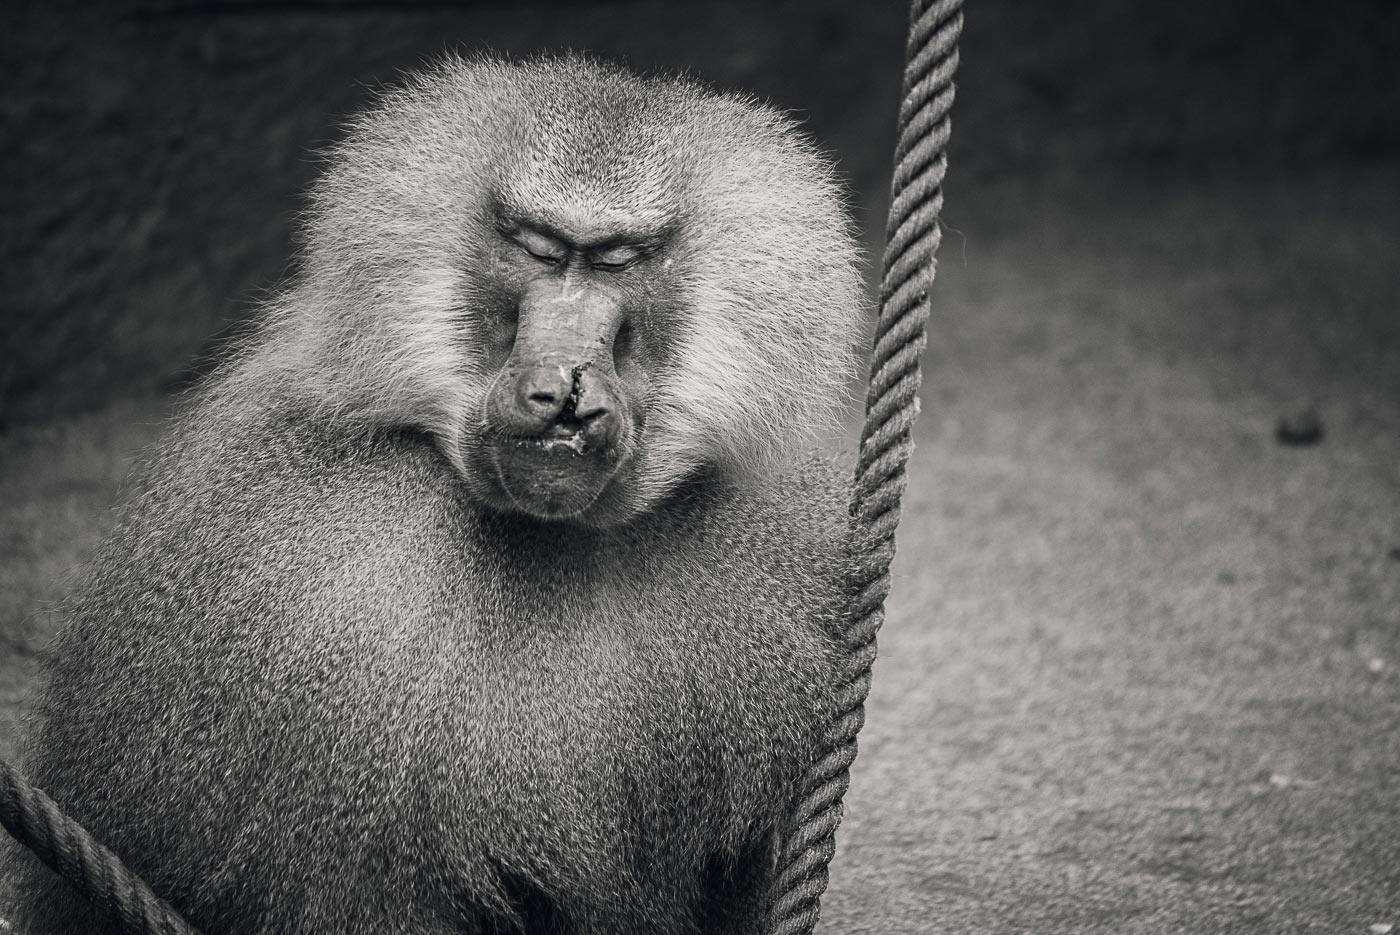 The-Monkeyrepublic-die-Affenrepublik-by-Daniel-Zakharov-58